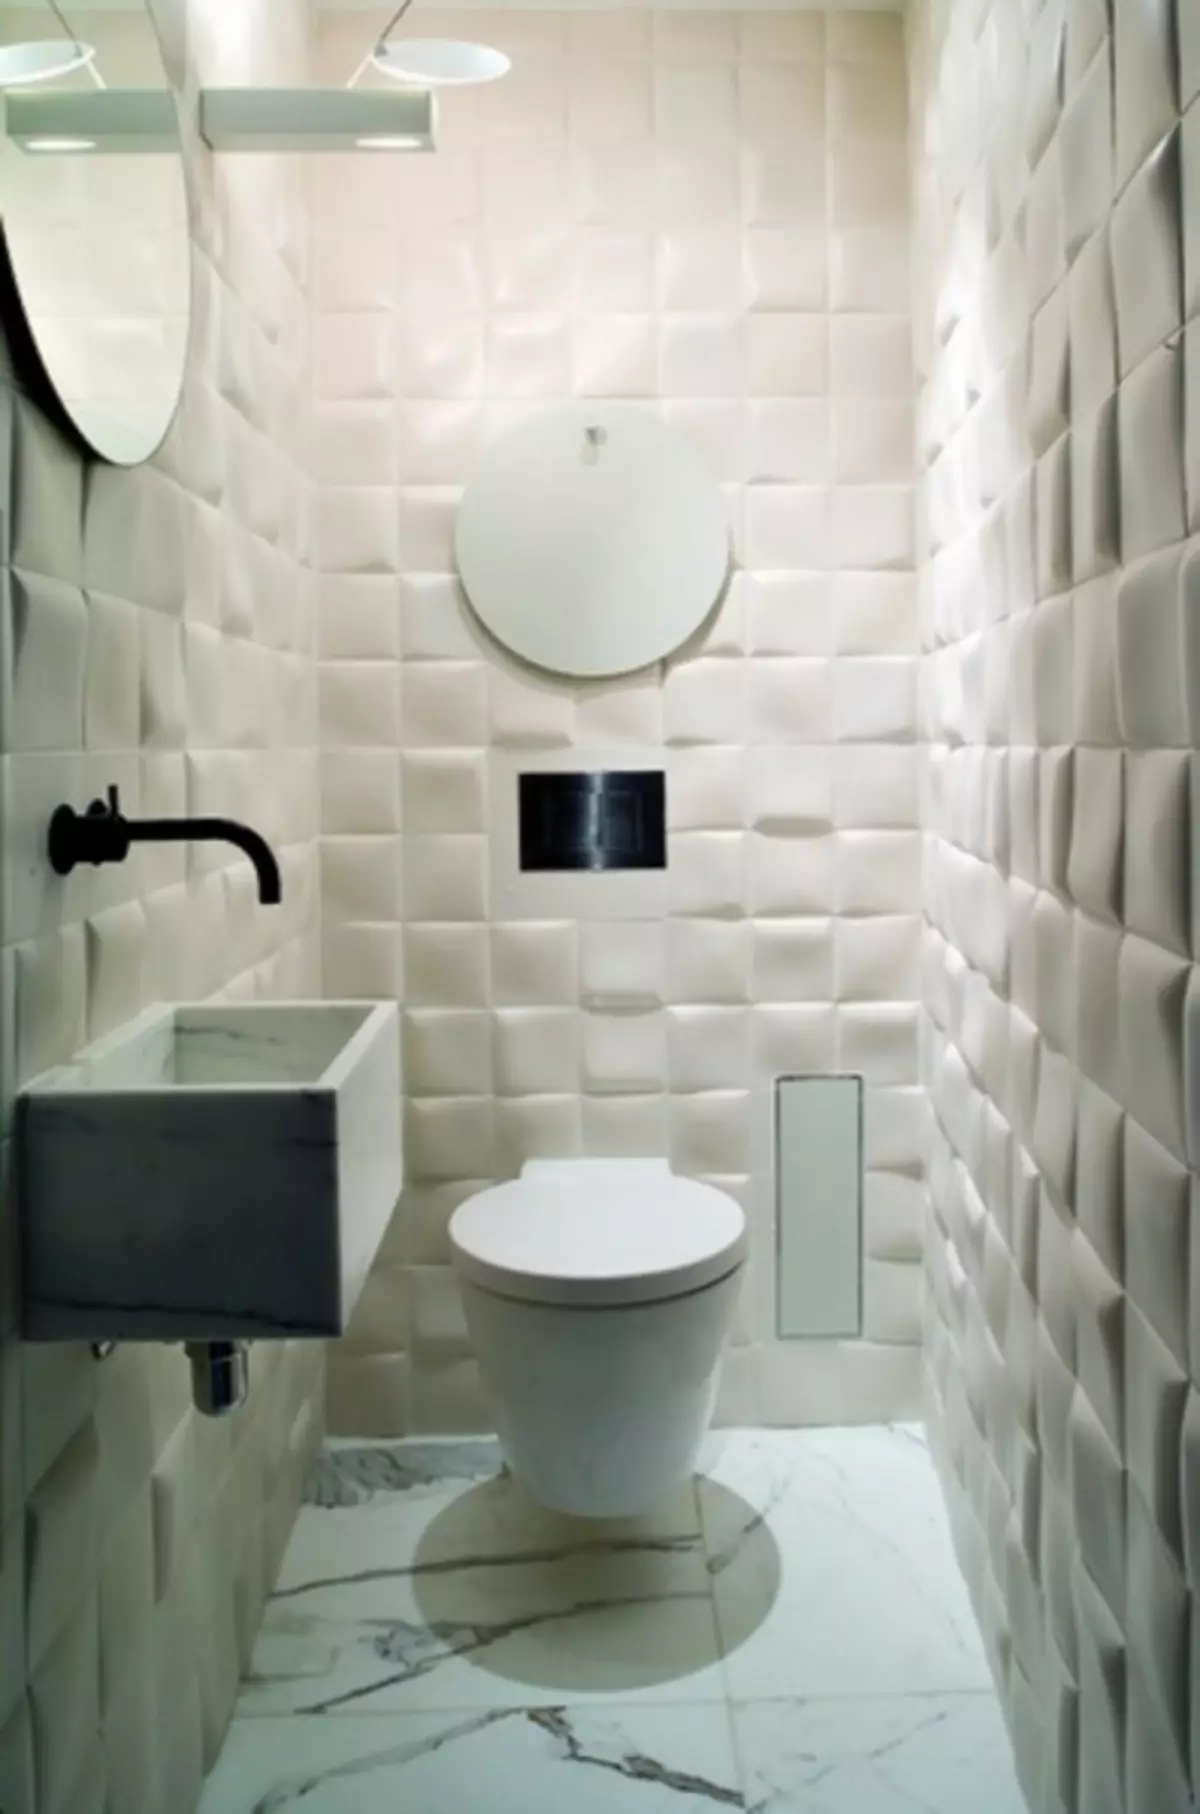 Reparation och design av toalett i Khrusjtjov (55 bilder)